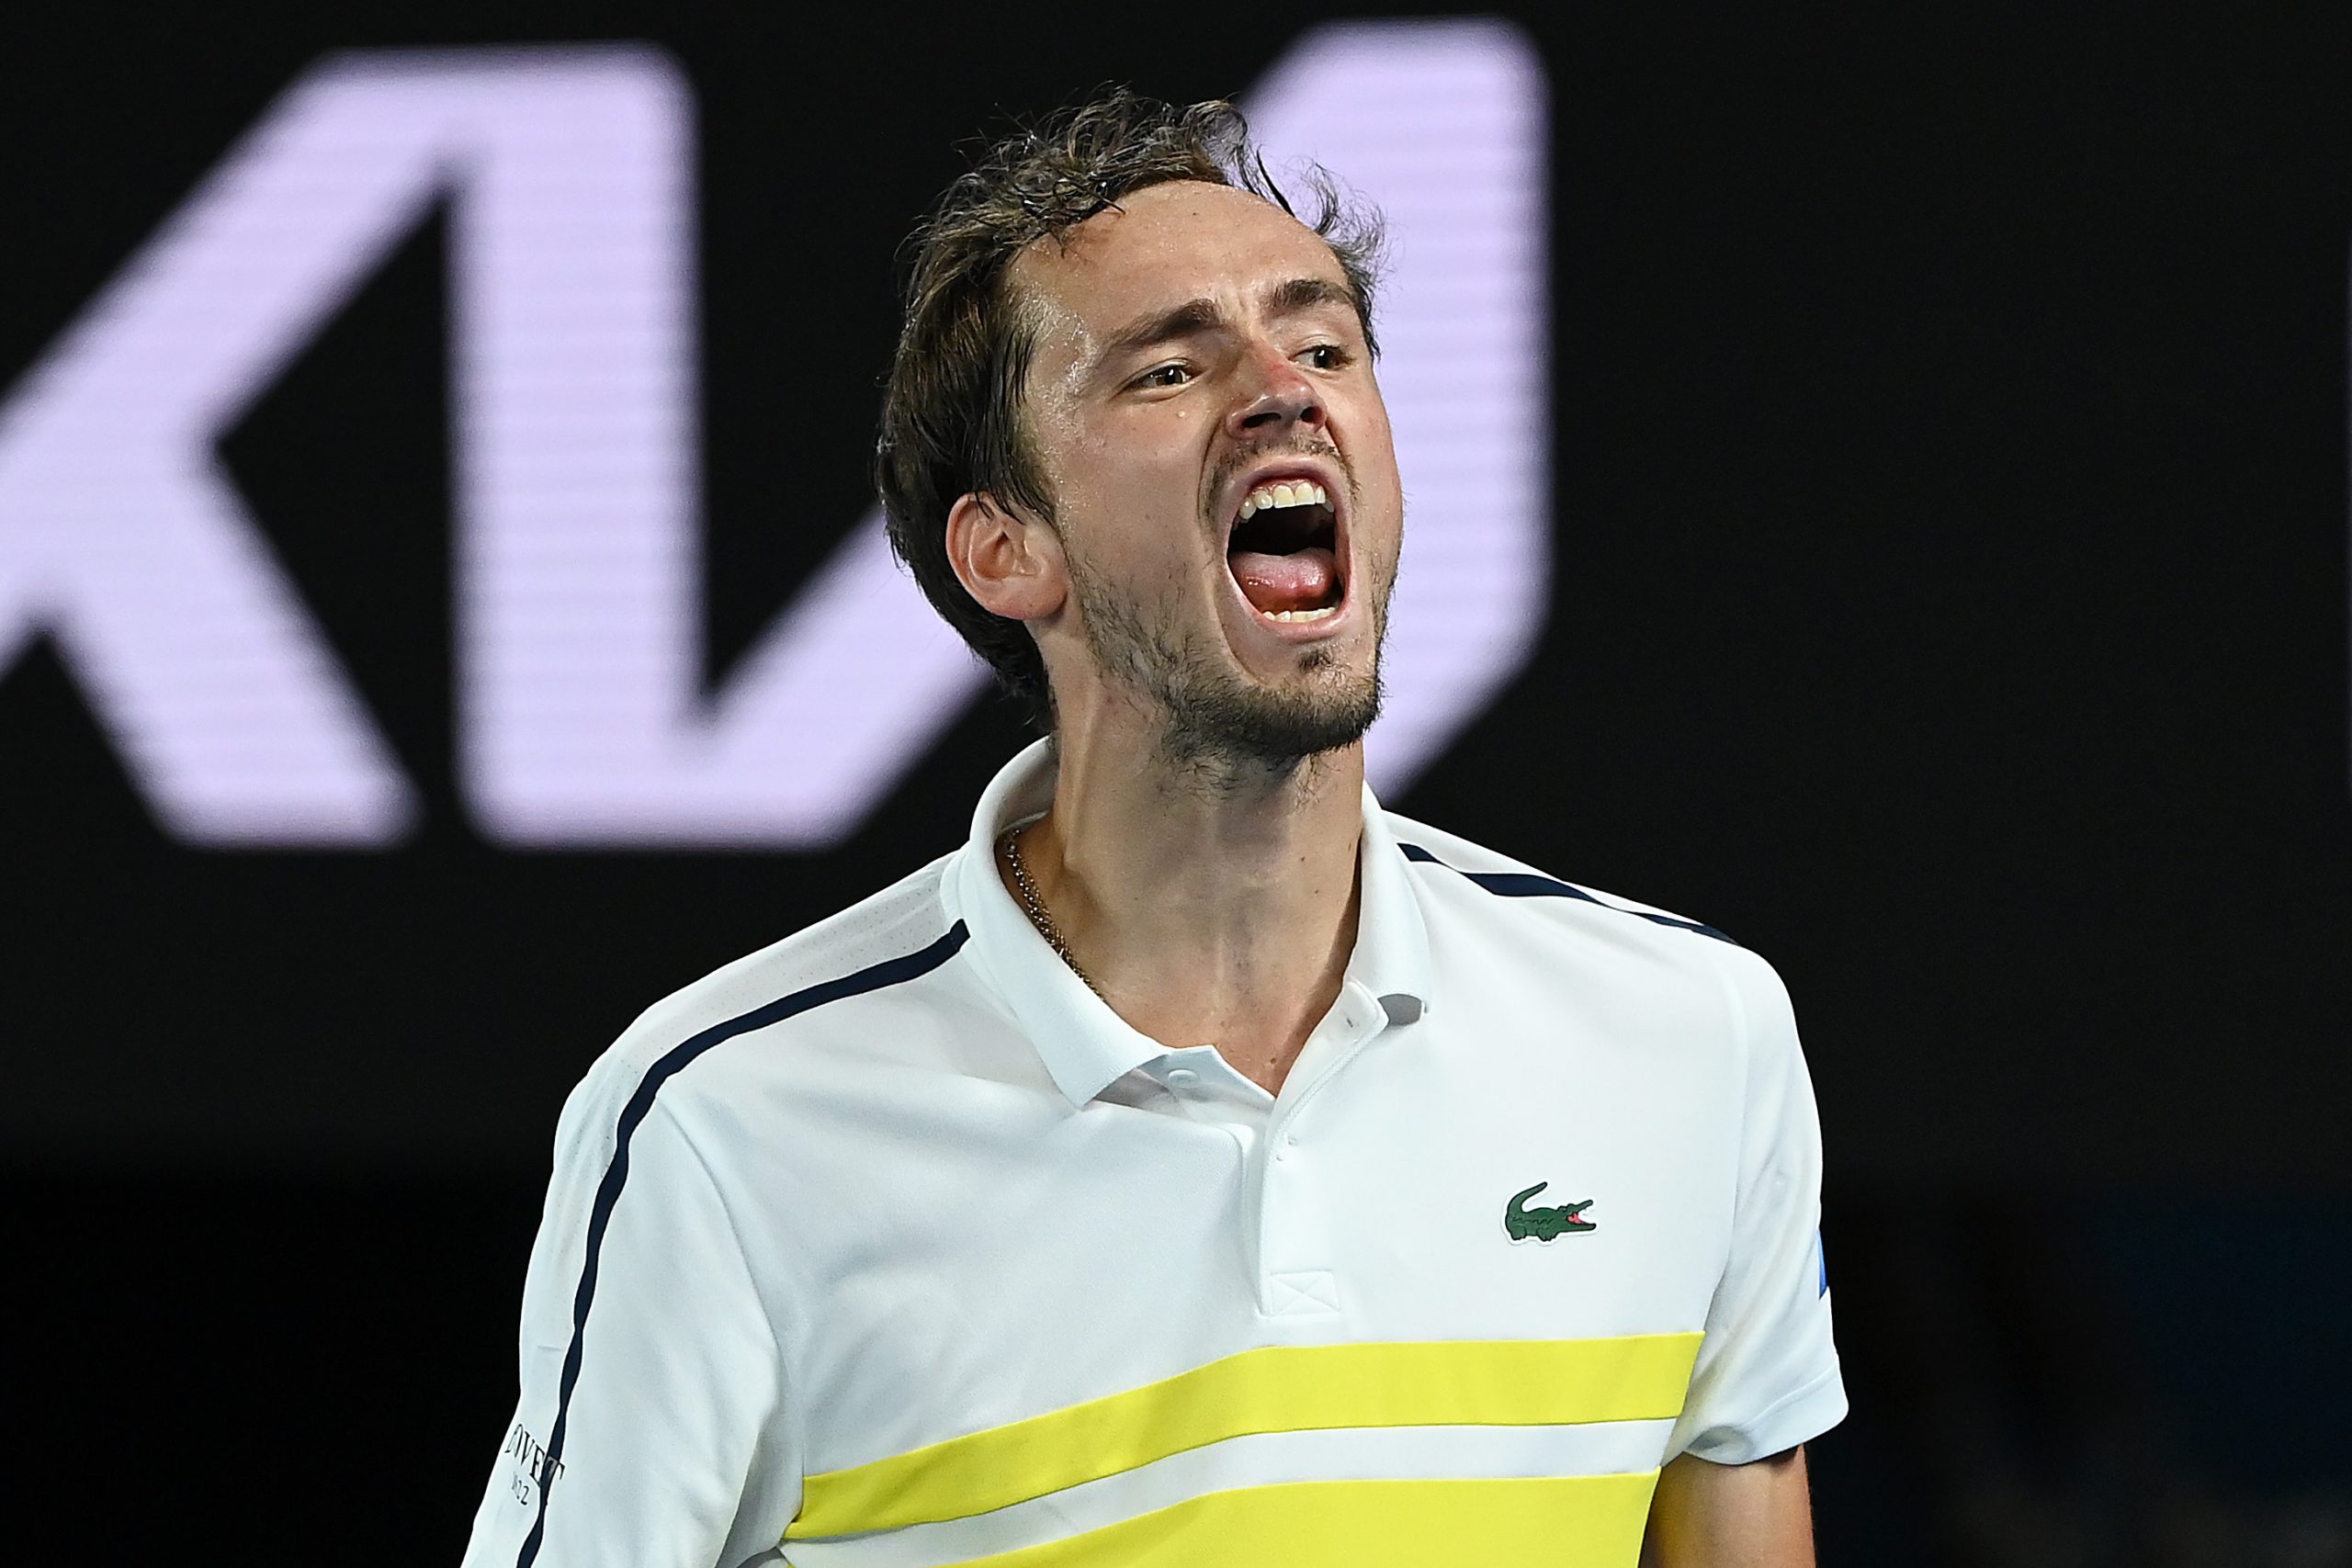 Australian Open Medvedev Tsitsipas final